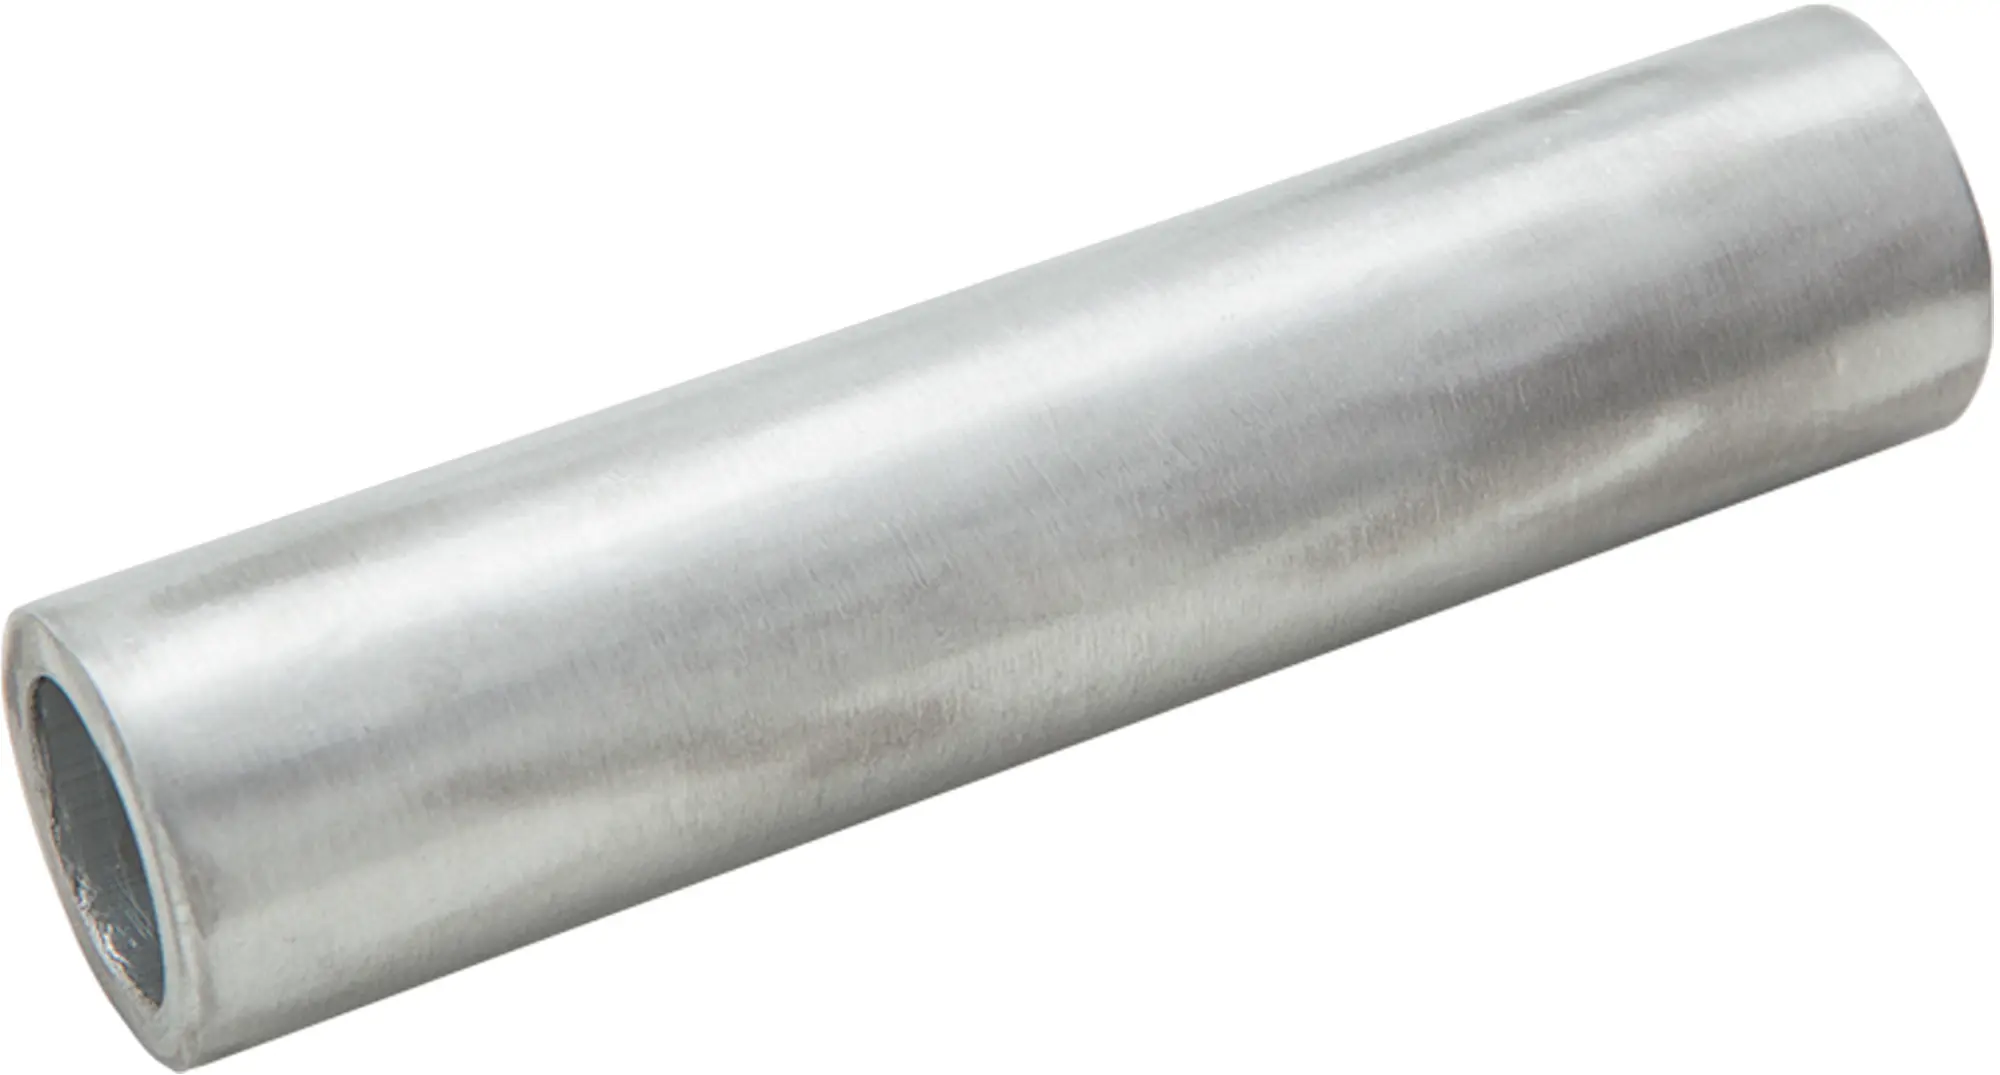 Гильза кабельная луженая Duwi ГМЛ 4-3 мм медь 5 шт. гильза кабельная луженая duwi гмл 6 4 мм медь 10 шт